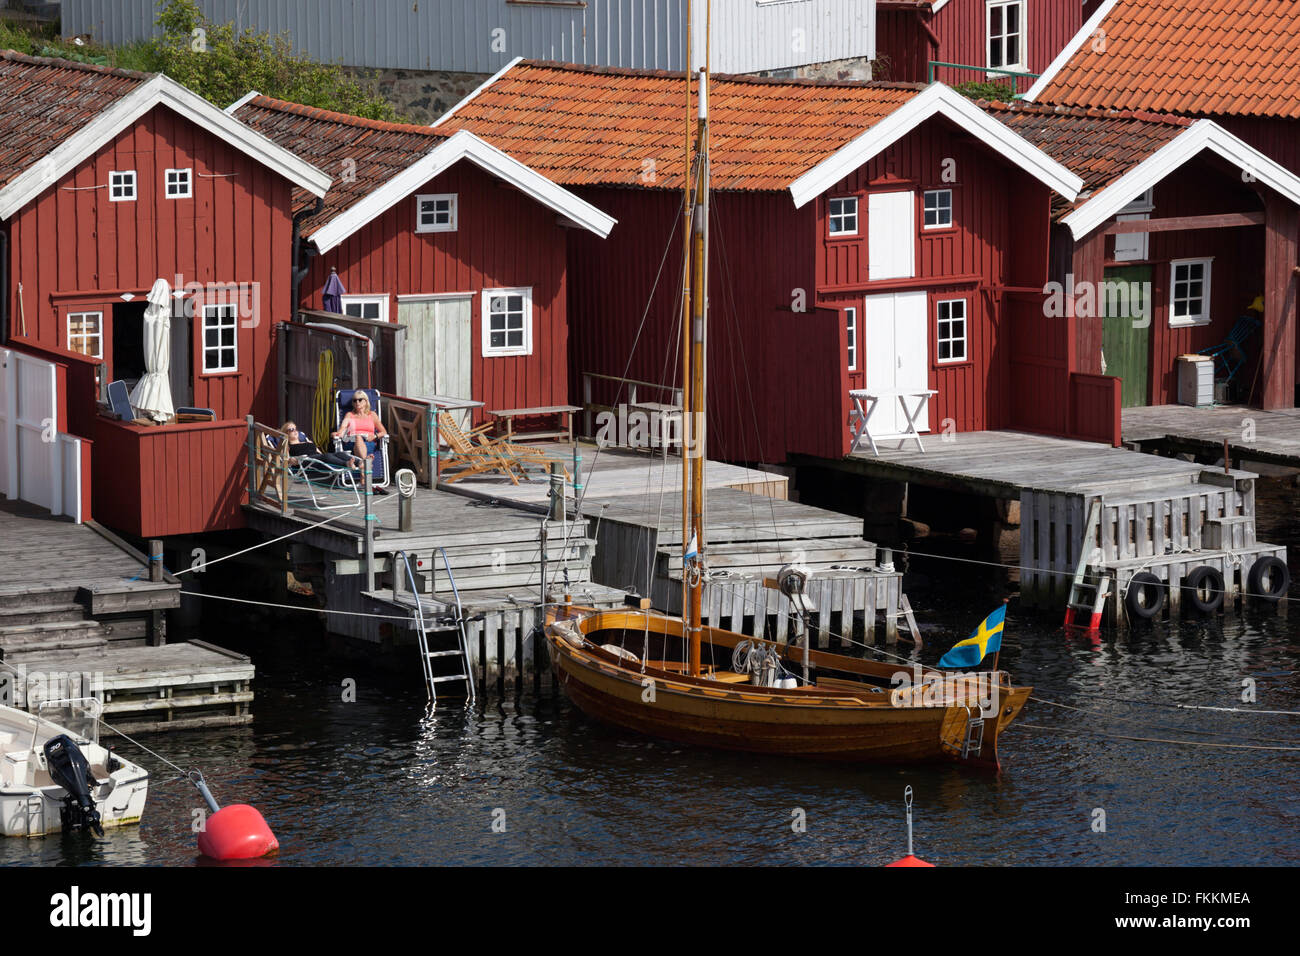 Tradizionale rosso falu case di pescatori, Hälleviksstrand, Orust, Bohuslän, sulla costa sud-ovest della Svezia, Svezia, Scandinavia, Europa Foto Stock